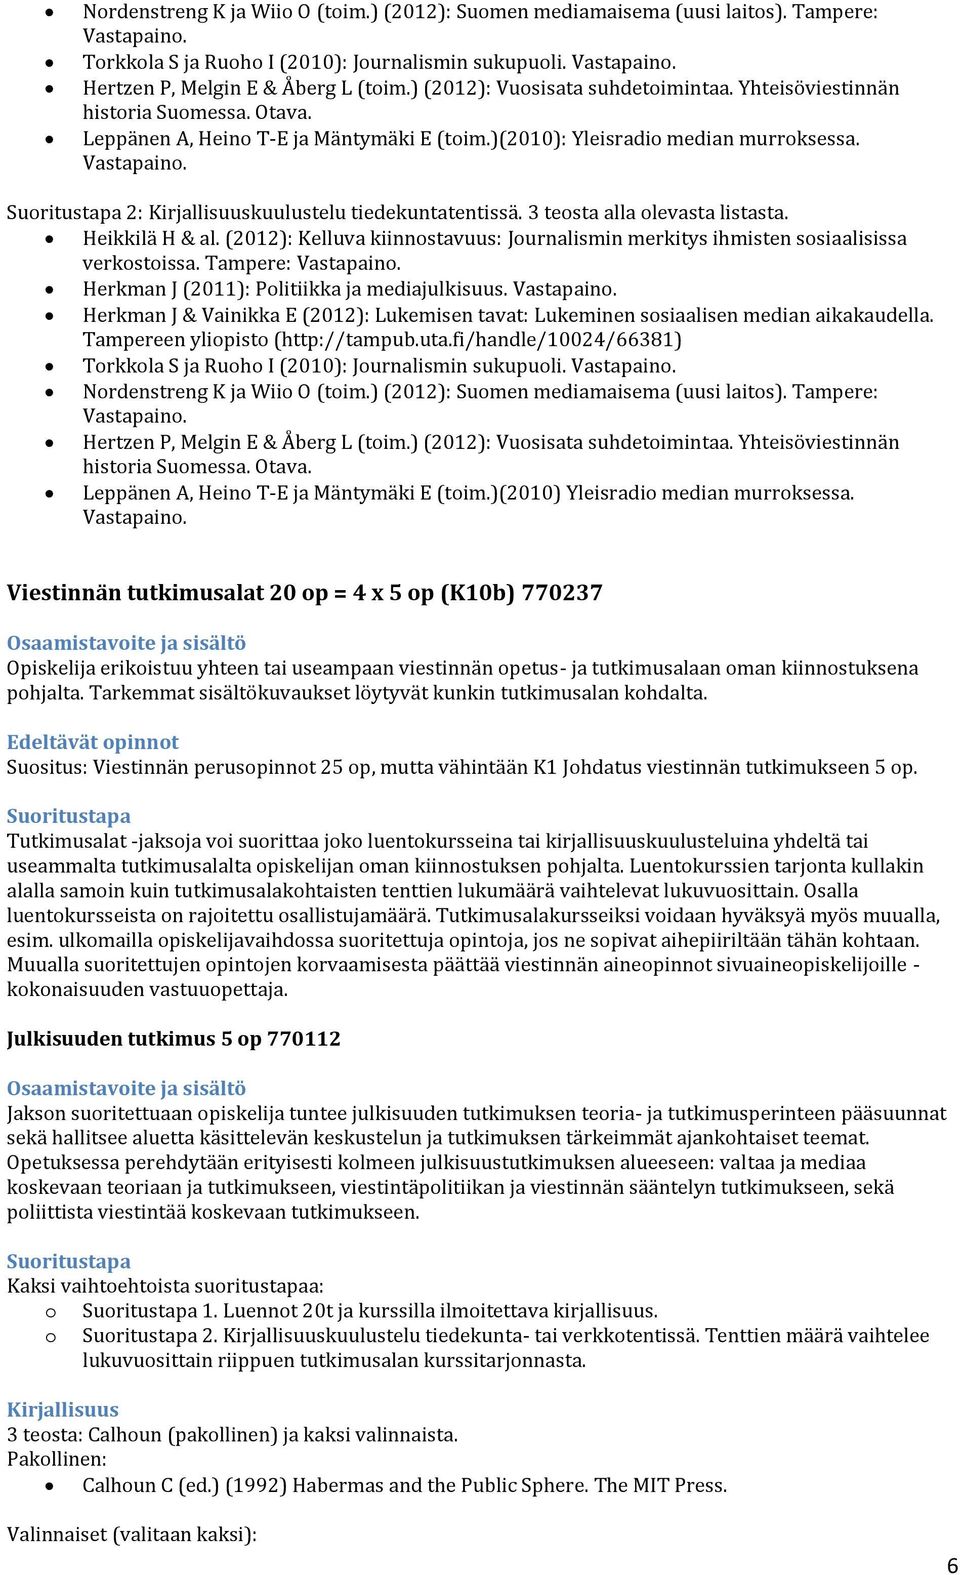 3 teosta alla olevasta listasta. Heikkilä H & al. (2012): Kelluva kiinnostavuus: Journalismin merkitys ihmisten sosiaalisissa verkostoissa. Tampere: Herkman J (2011): Politiikka ja mediajulkisuus.